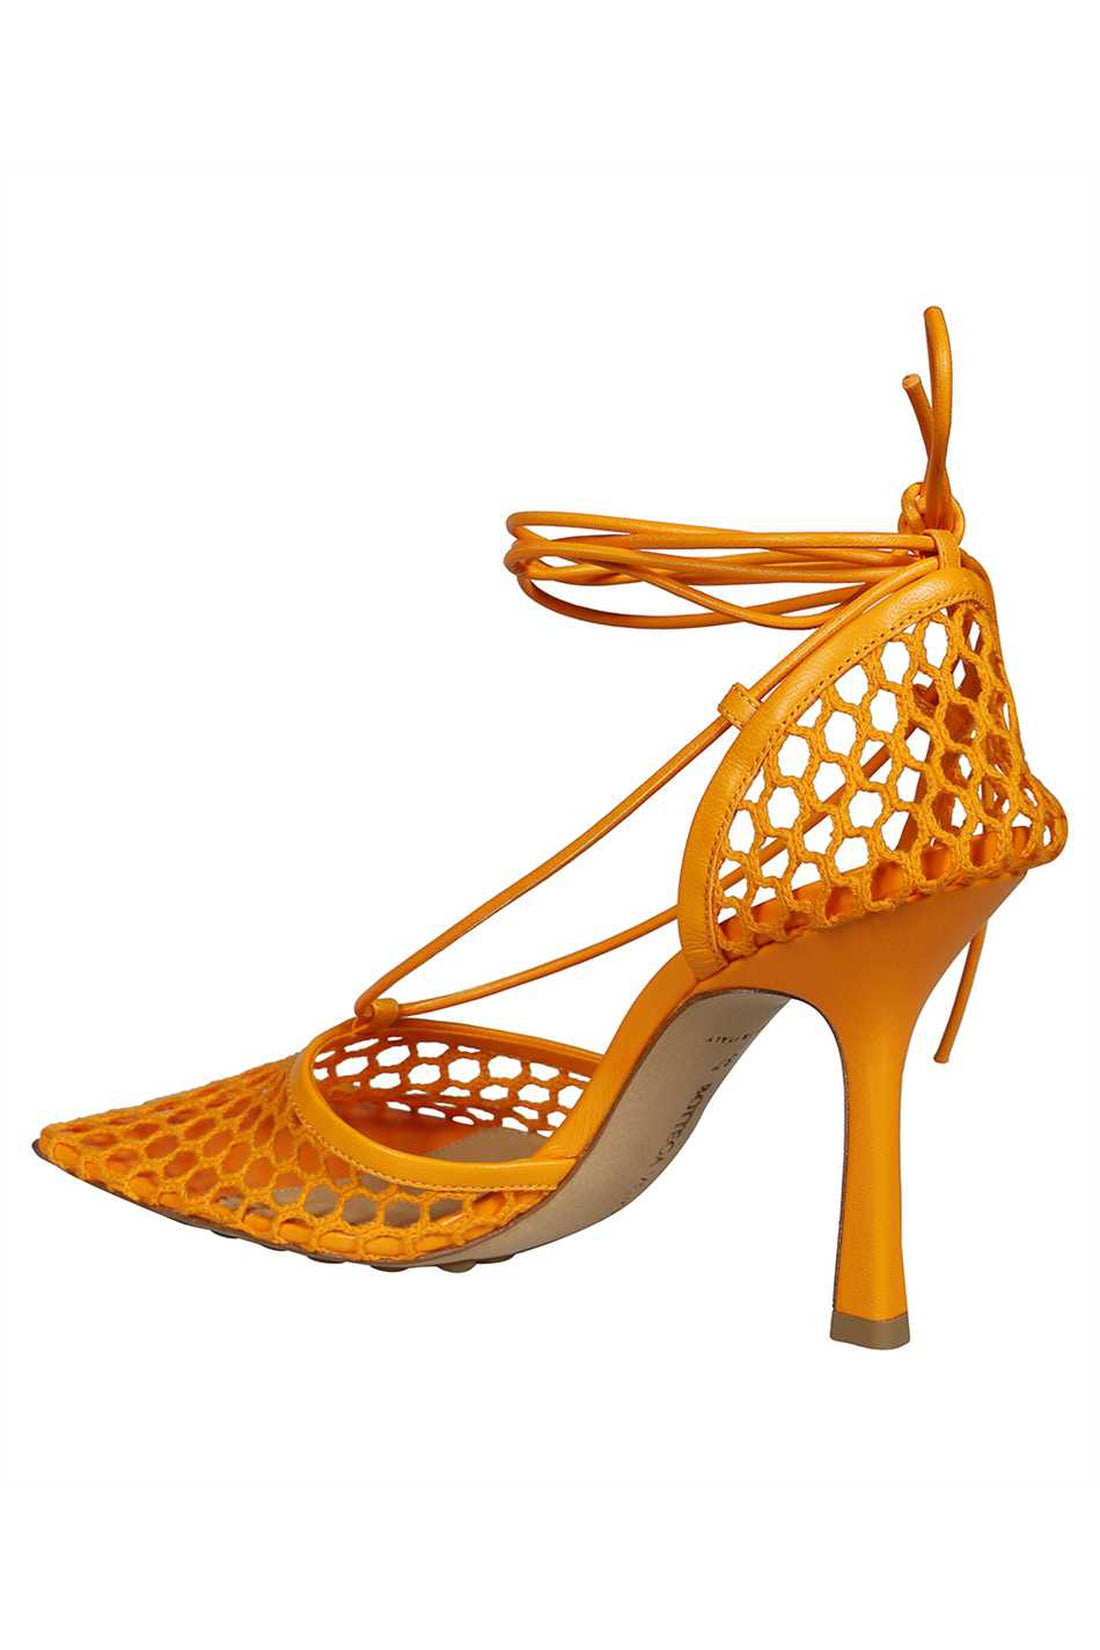 Bottega Veneta-OUTLET-SALE-Stretch lace-up sandals-ARCHIVIST